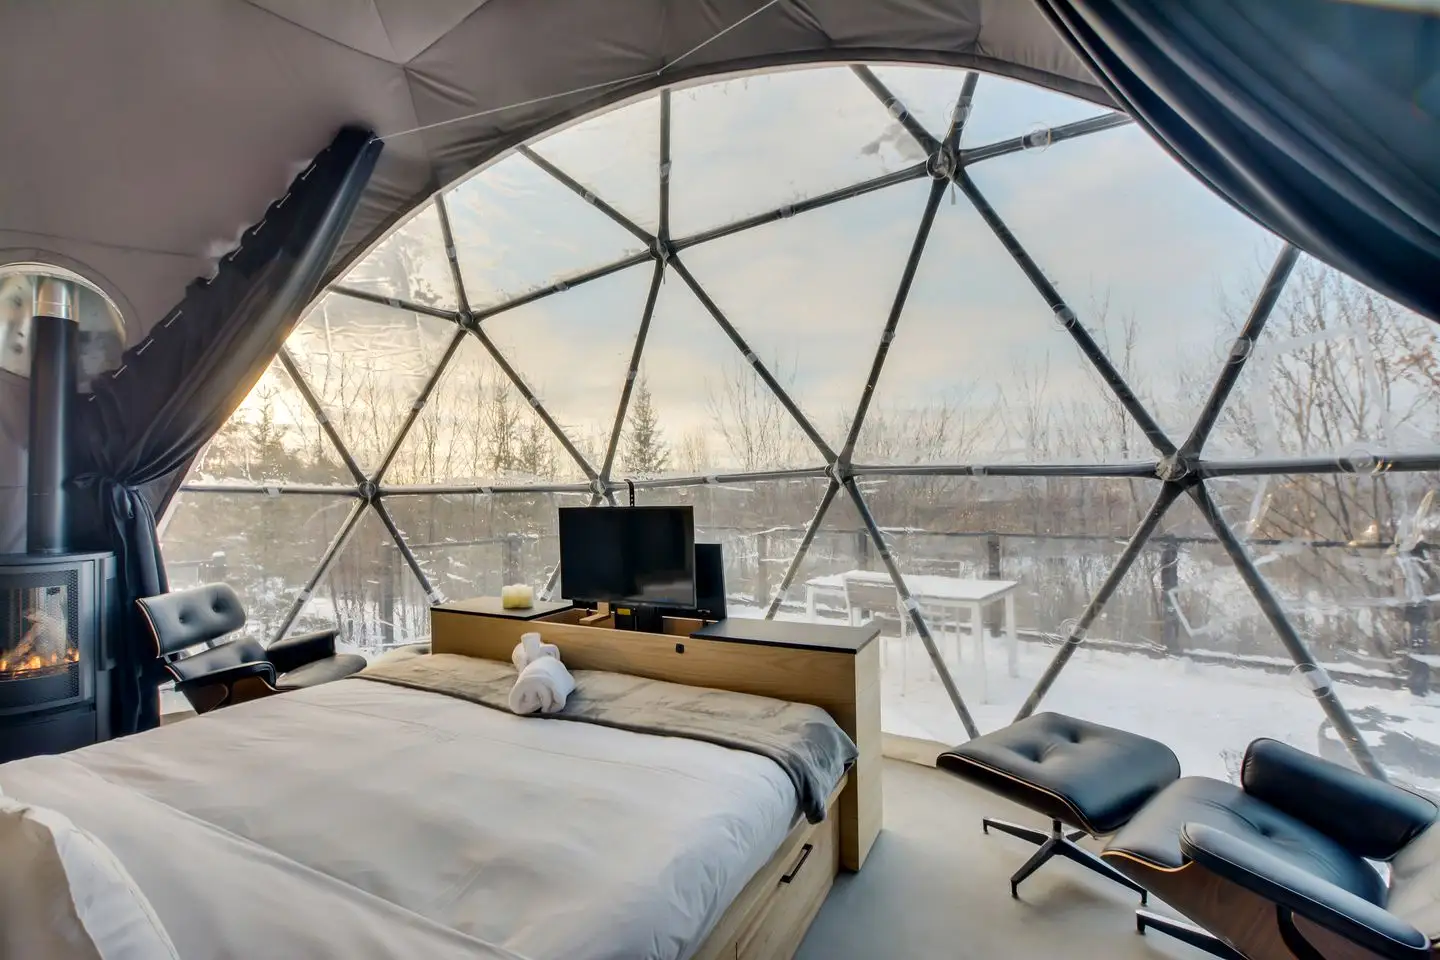 Glamping tenda de acampamento hotel de luxo, com banheiro dome casa de acampamento isolamento barraca